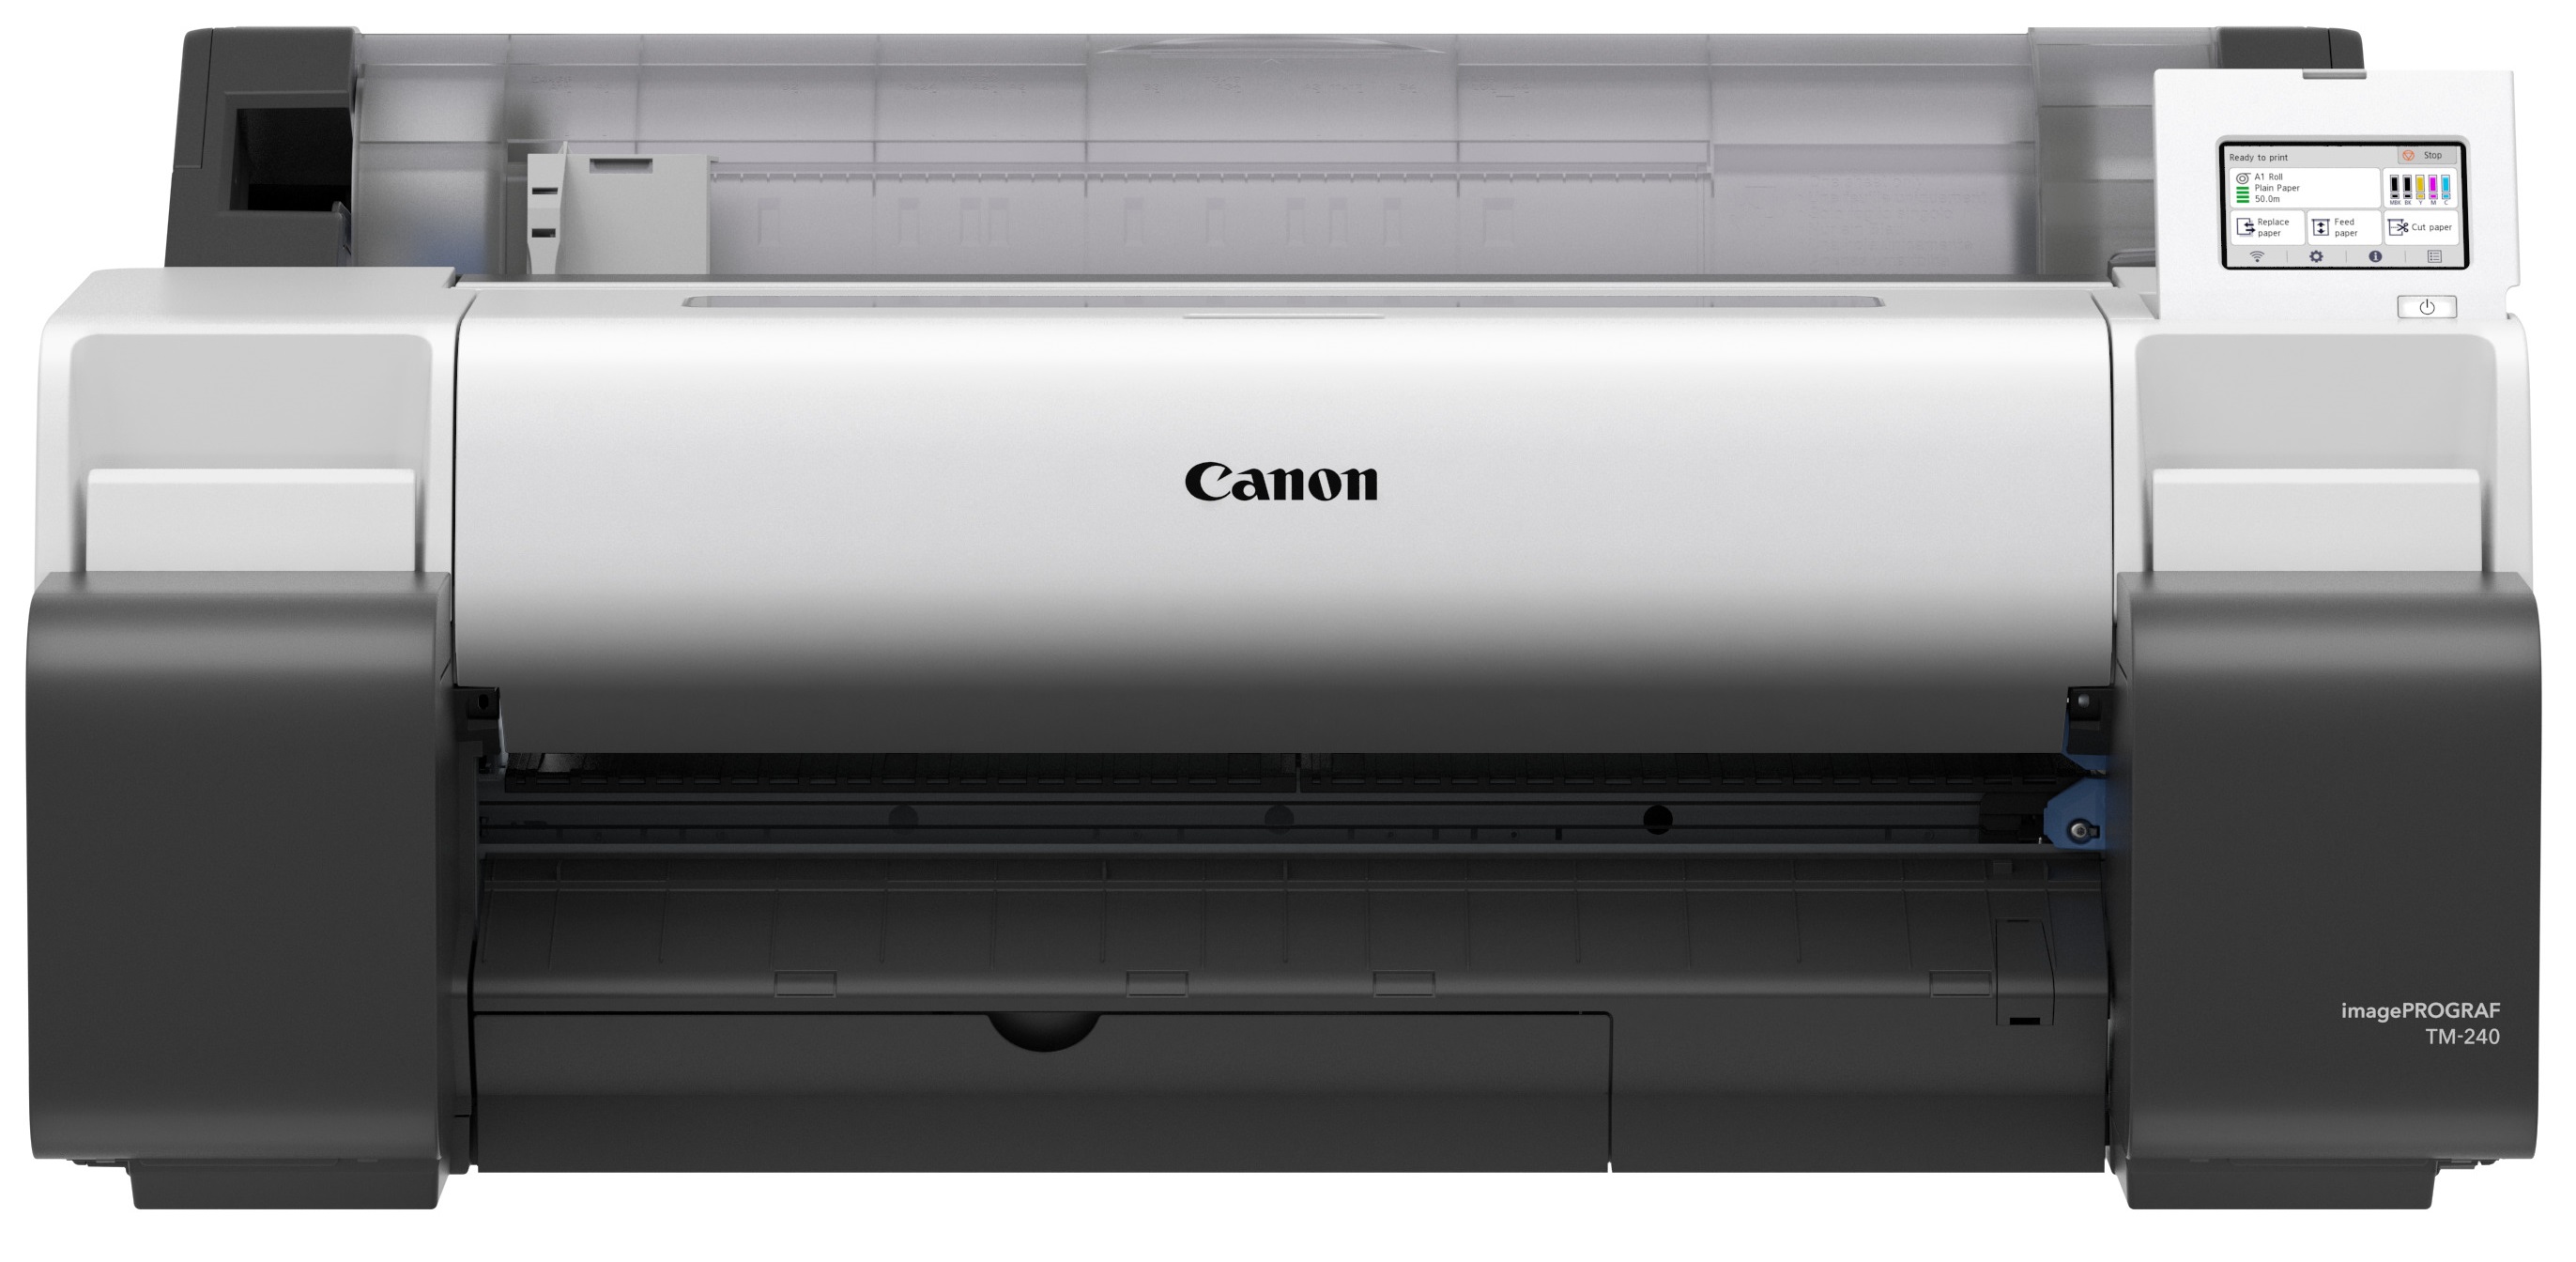 Obrázek Canon imagePROGRAF/TM-240/Plotr/Ink/Role/LAN/WiFi/USB